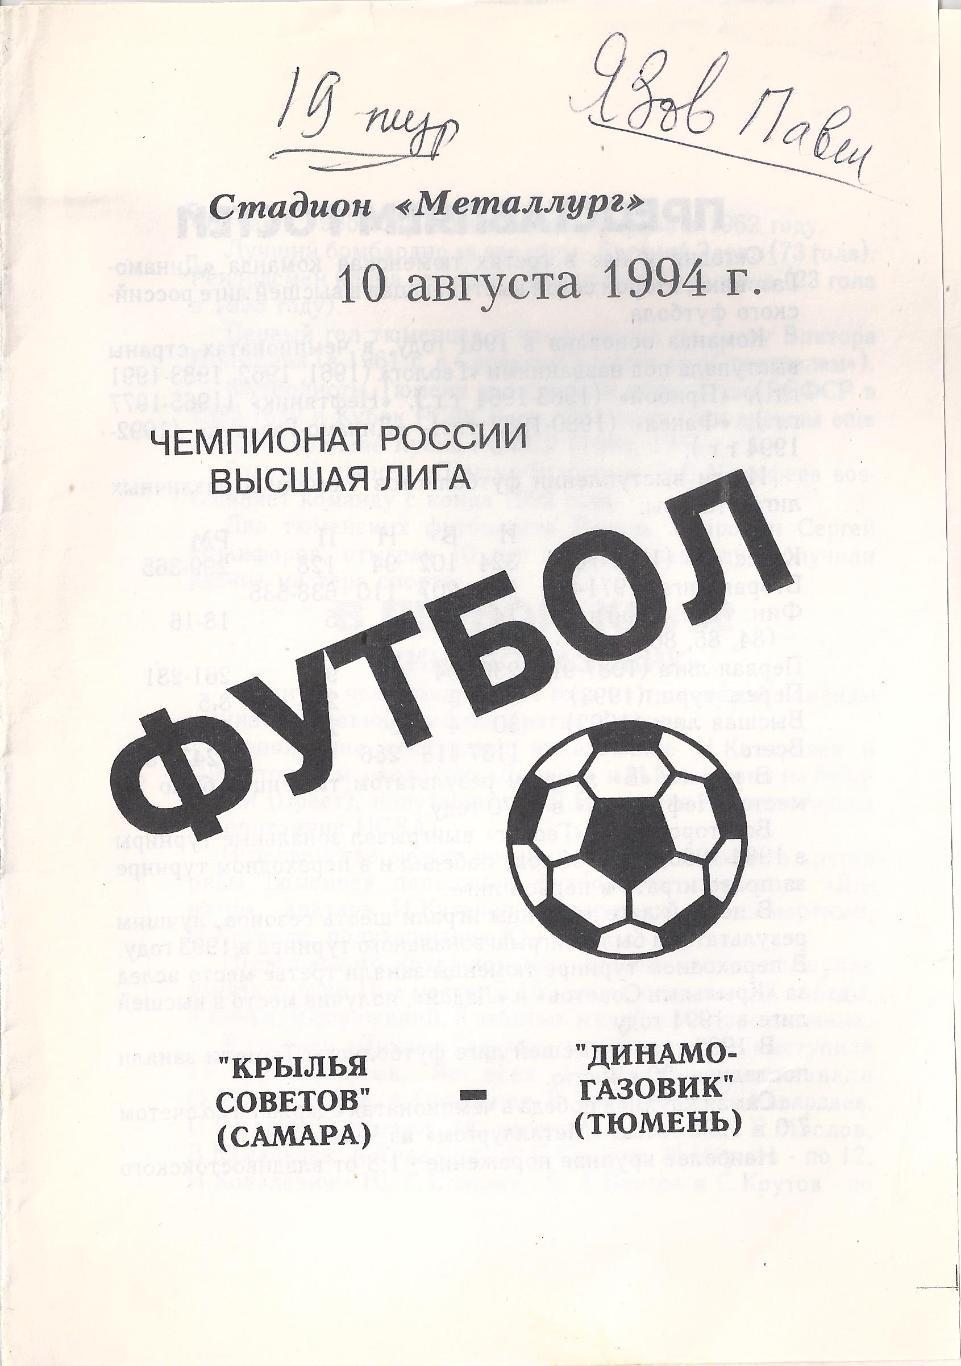 1994 - Крылья Советов Самара - Динамо-Газовик Тюмень